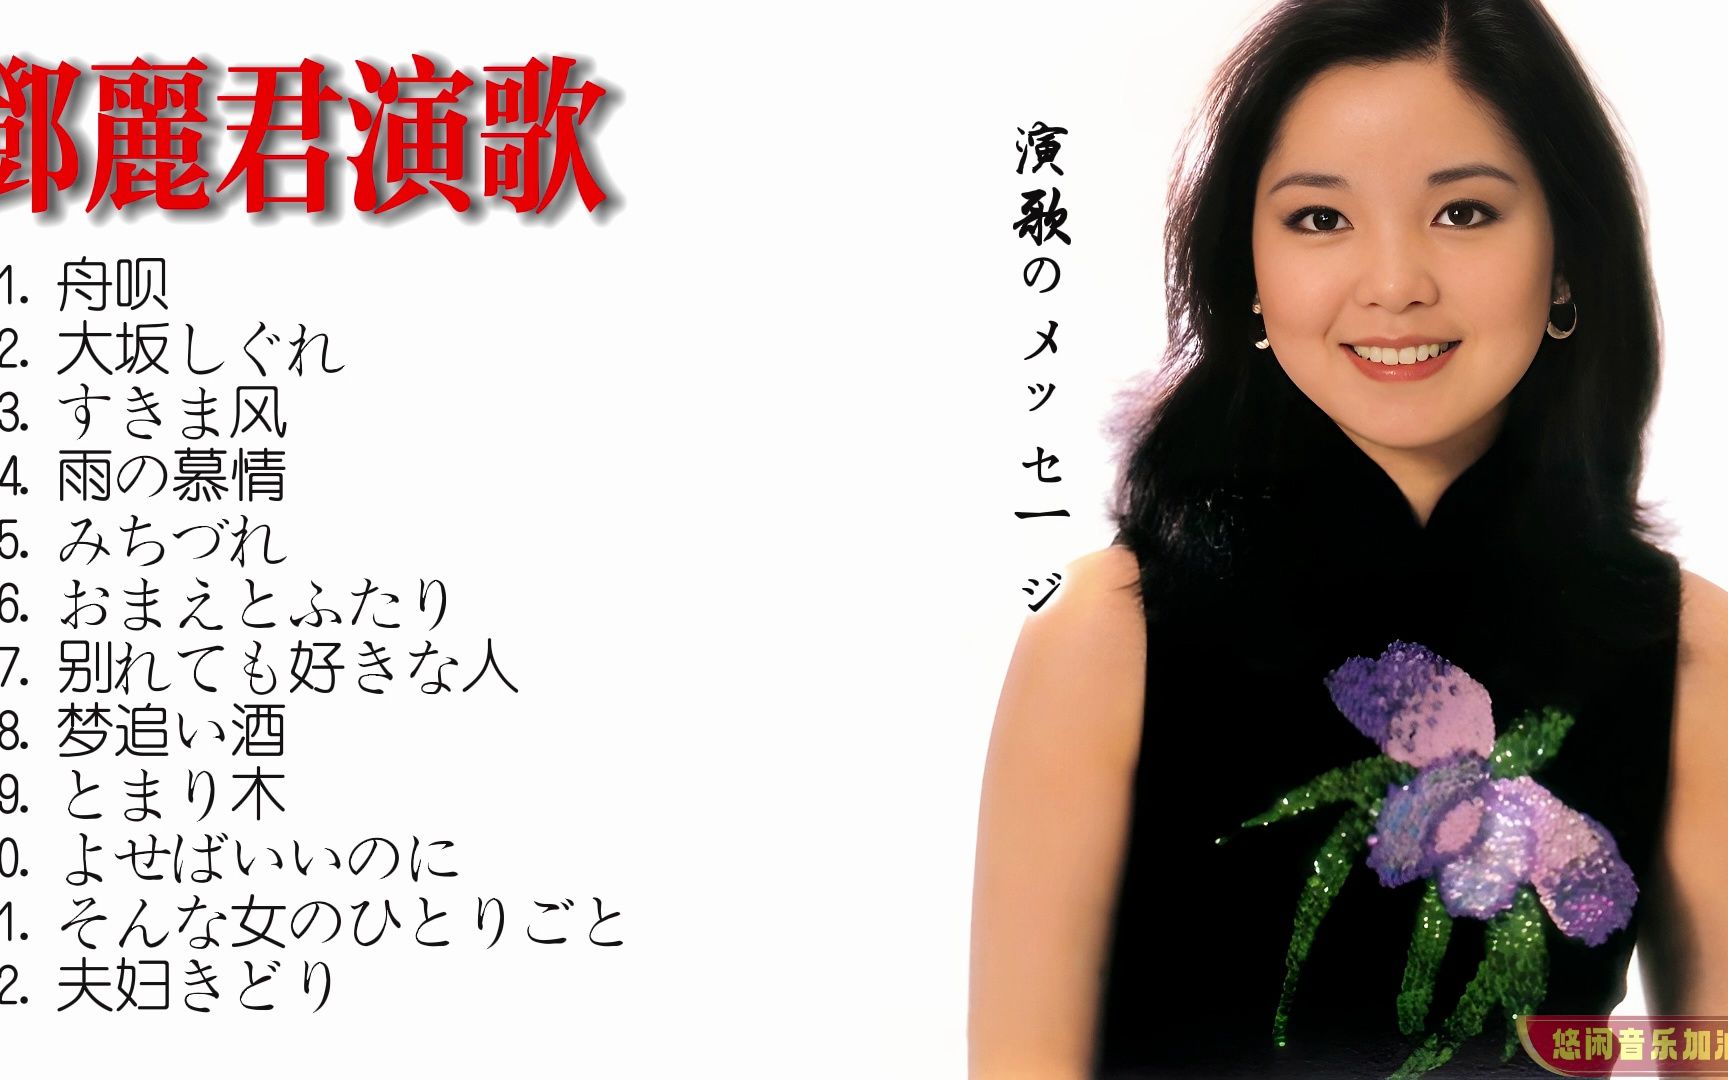 【无损音乐】邓丽君翻唱的经典日本演歌,甜美的声线让人陶醉!